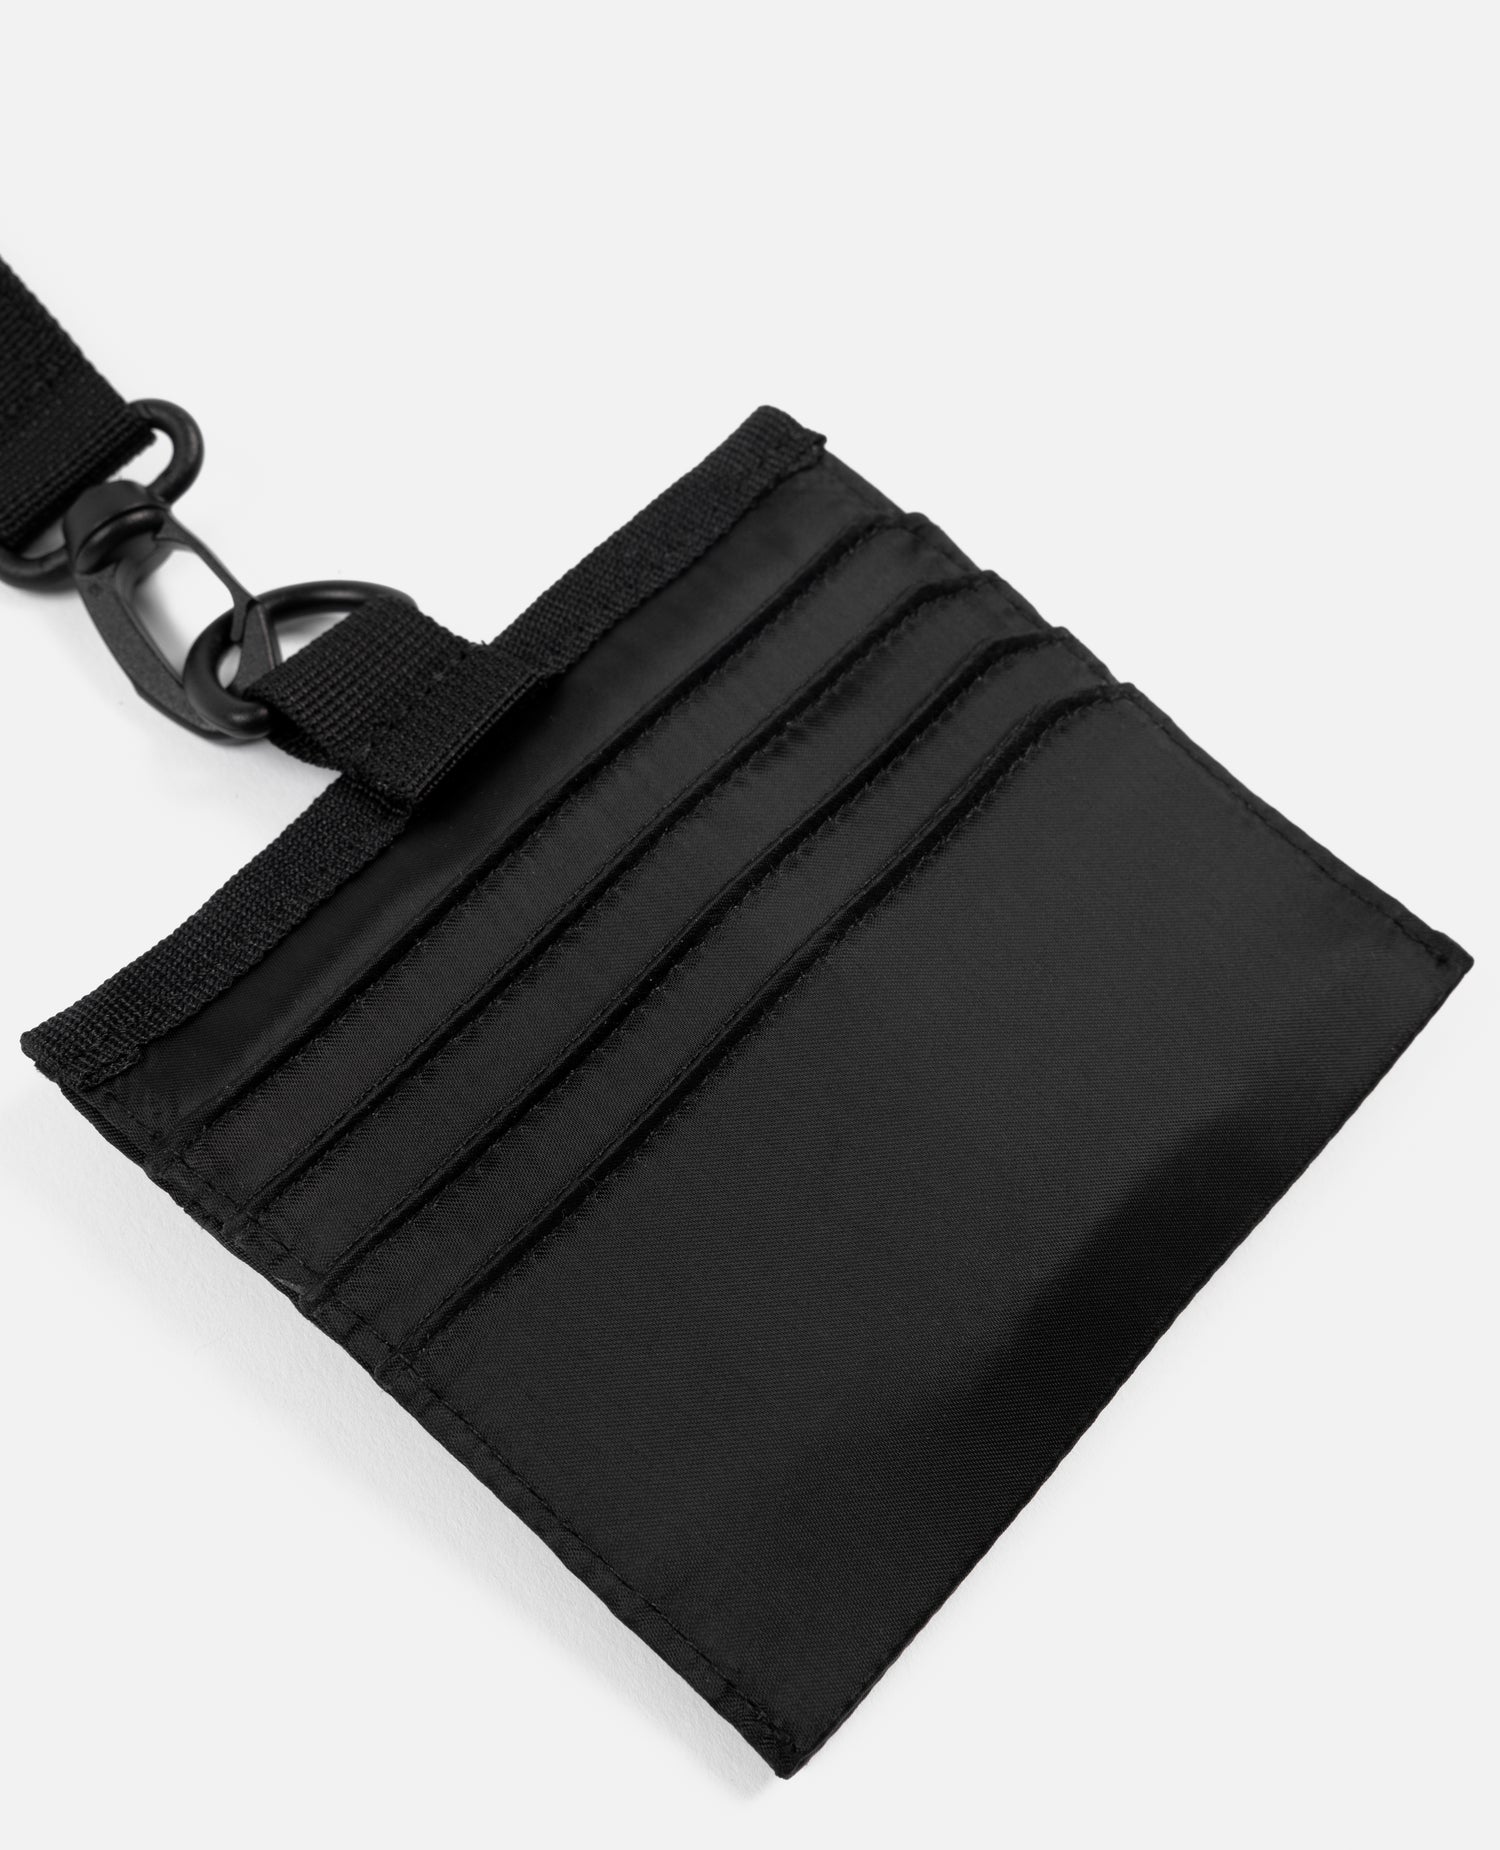 Patta Tactical Wallet (Black)